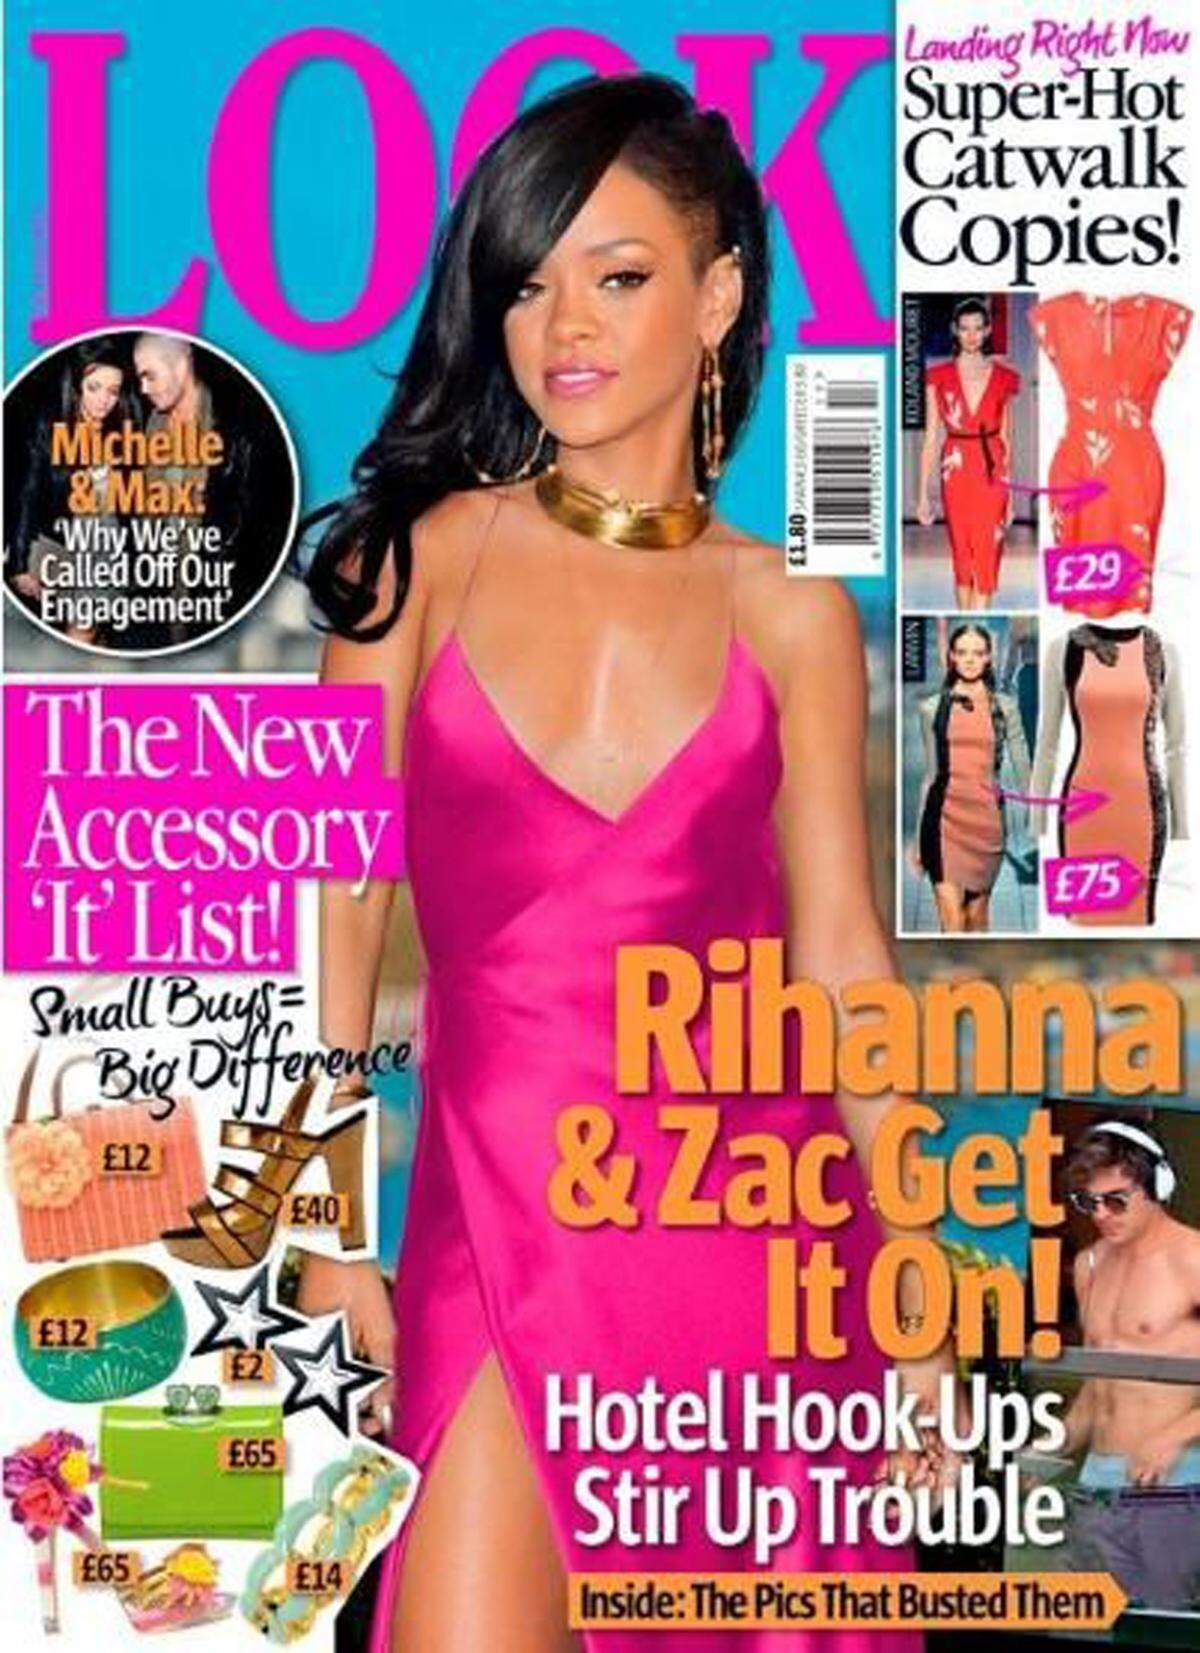 Ganz künstlich sieht Rihanna am Look-Titel aus. Kein Wunder, Kopf und Körper gehören zu unterschiedlichen Bildern der Sängerin.Tatsächlich passiert auch das nicht selten. Häufig werden Köpfe und Körperteile richtiggehend zusammengebaut.